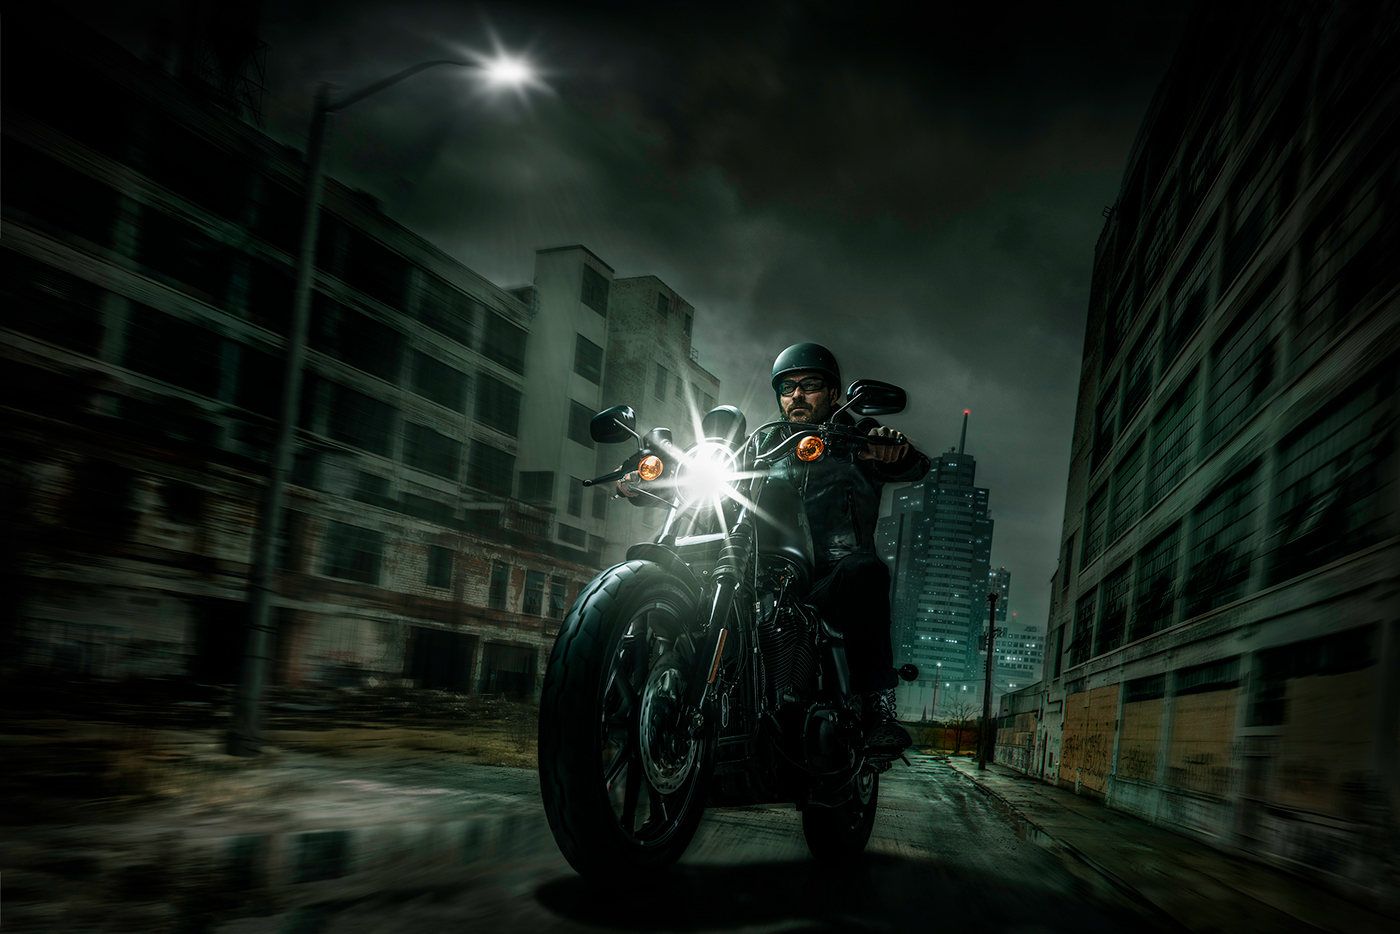 motorcycles riders Harleys night